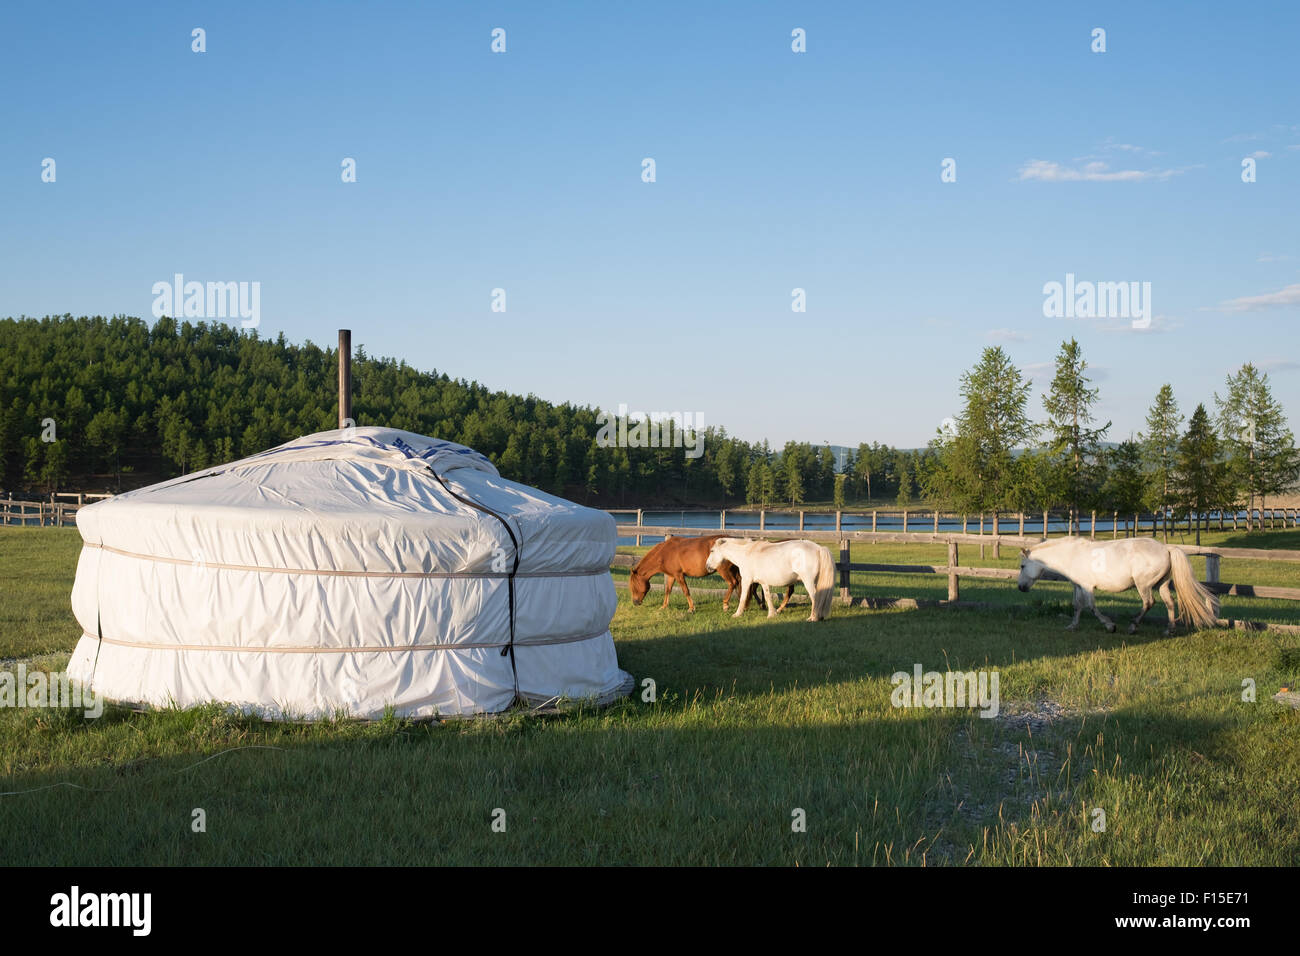 Mongolian Yurt, or Ger. Stock Photo